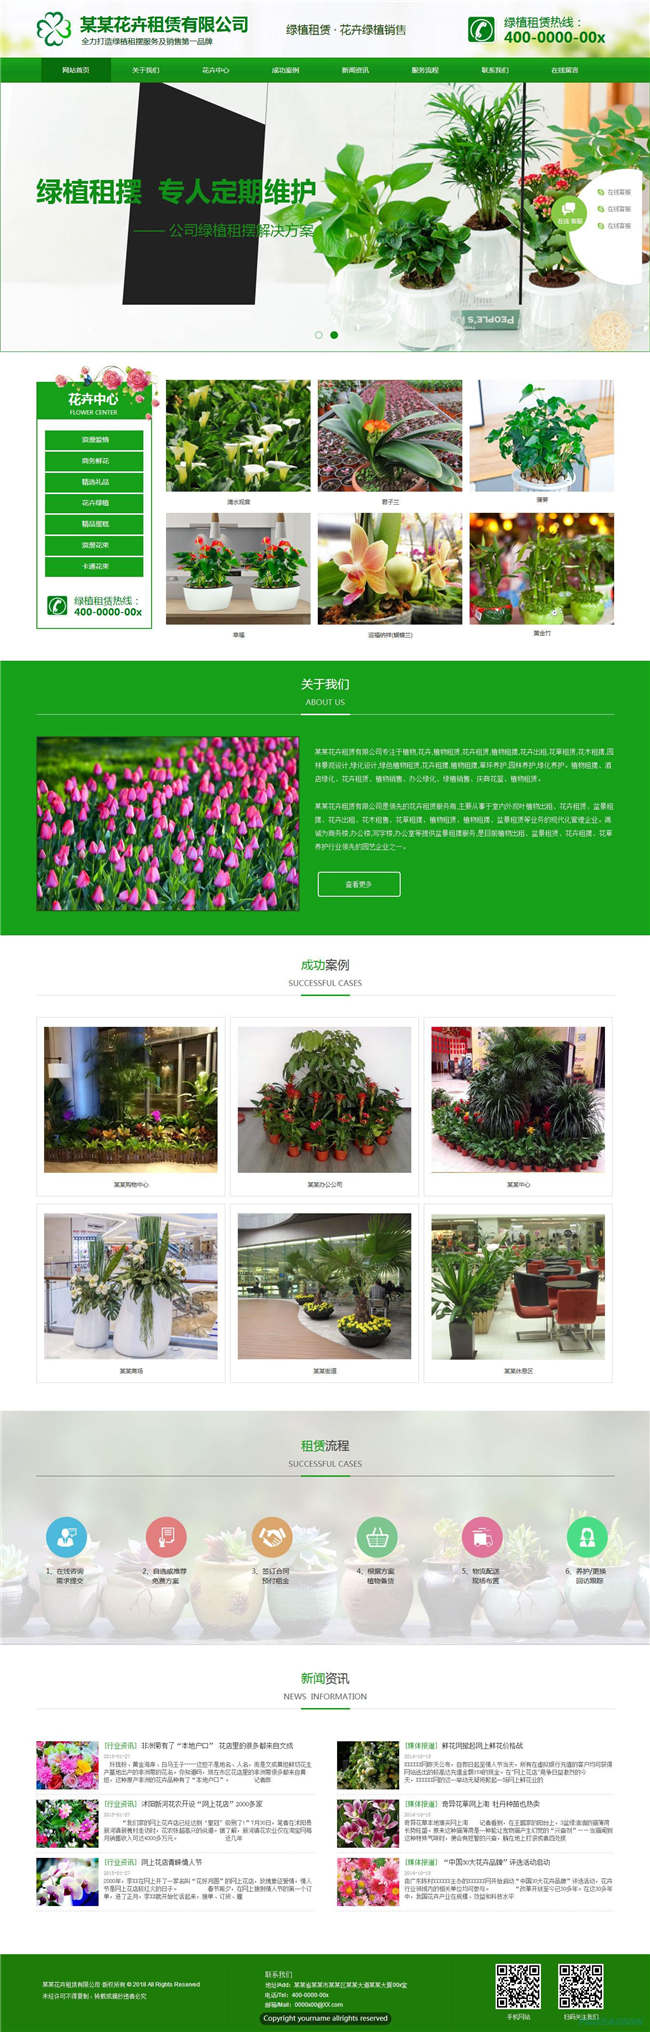 园艺花卉农业畜牧养殖种植花卉网站带手机端WordPress模板演示图